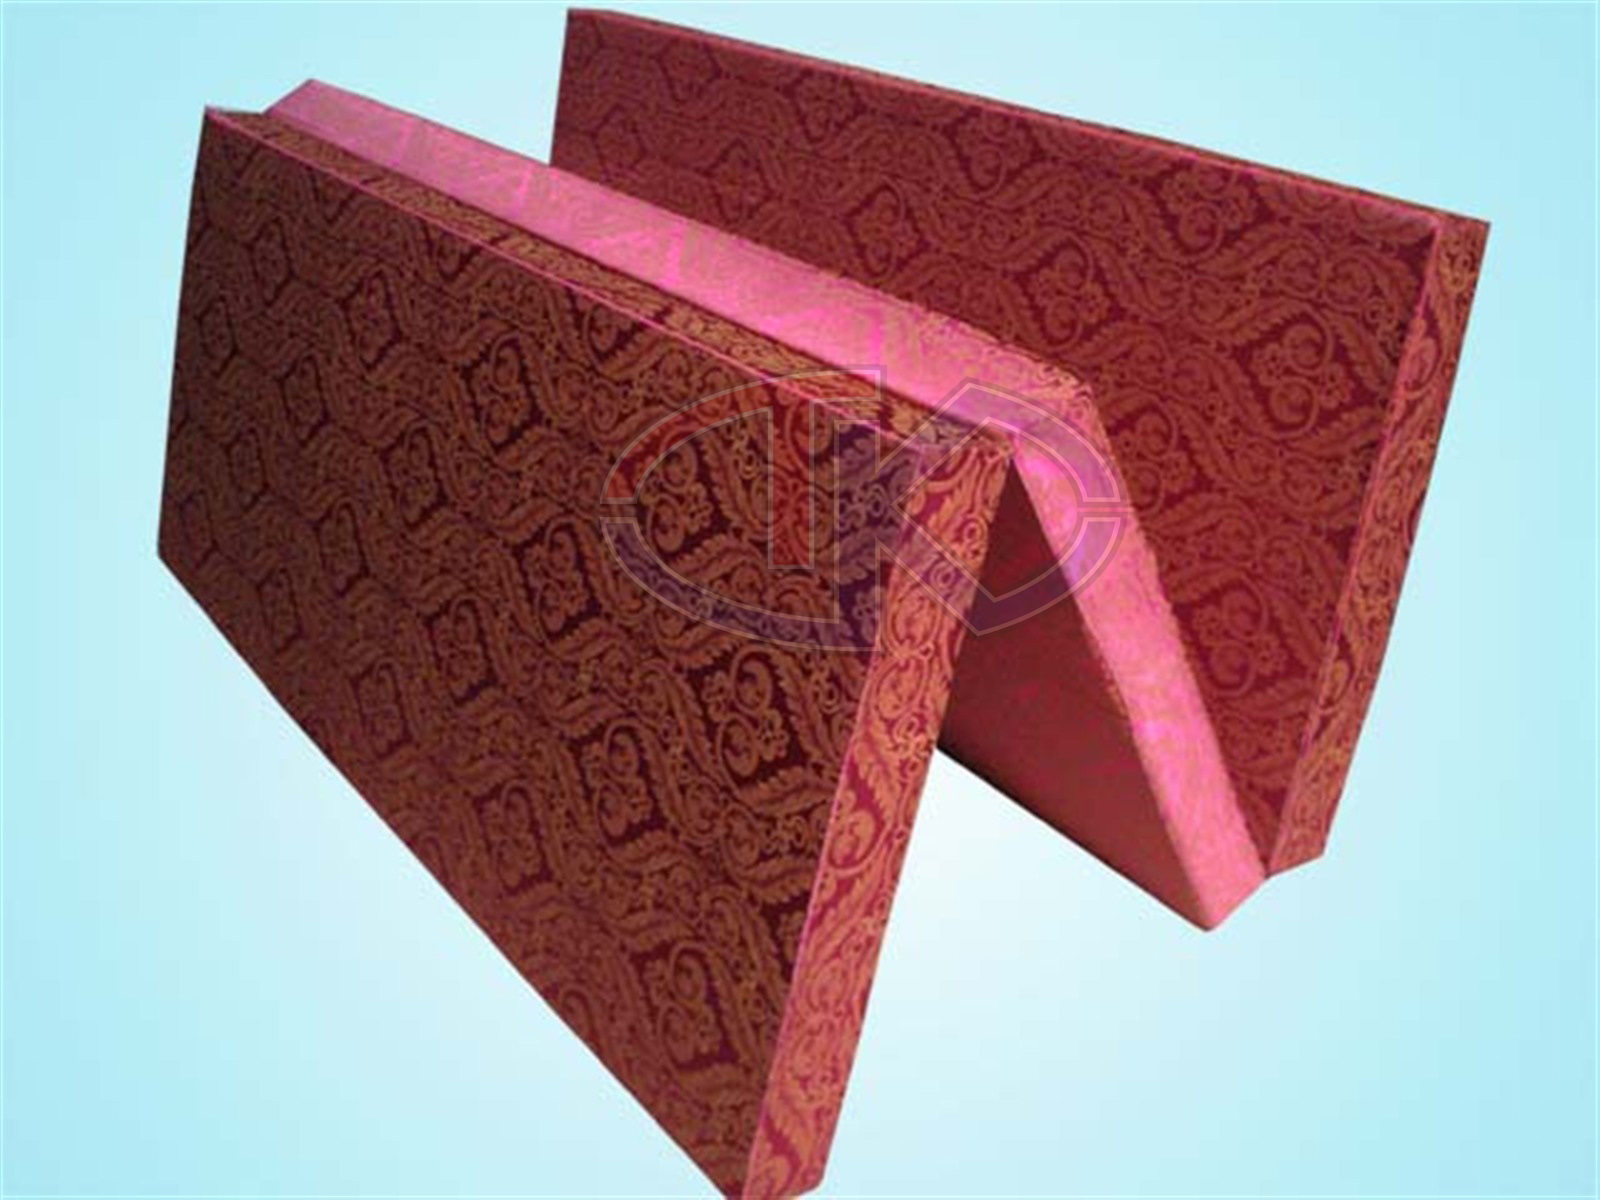 foam mattress manufacturers in coimbatore